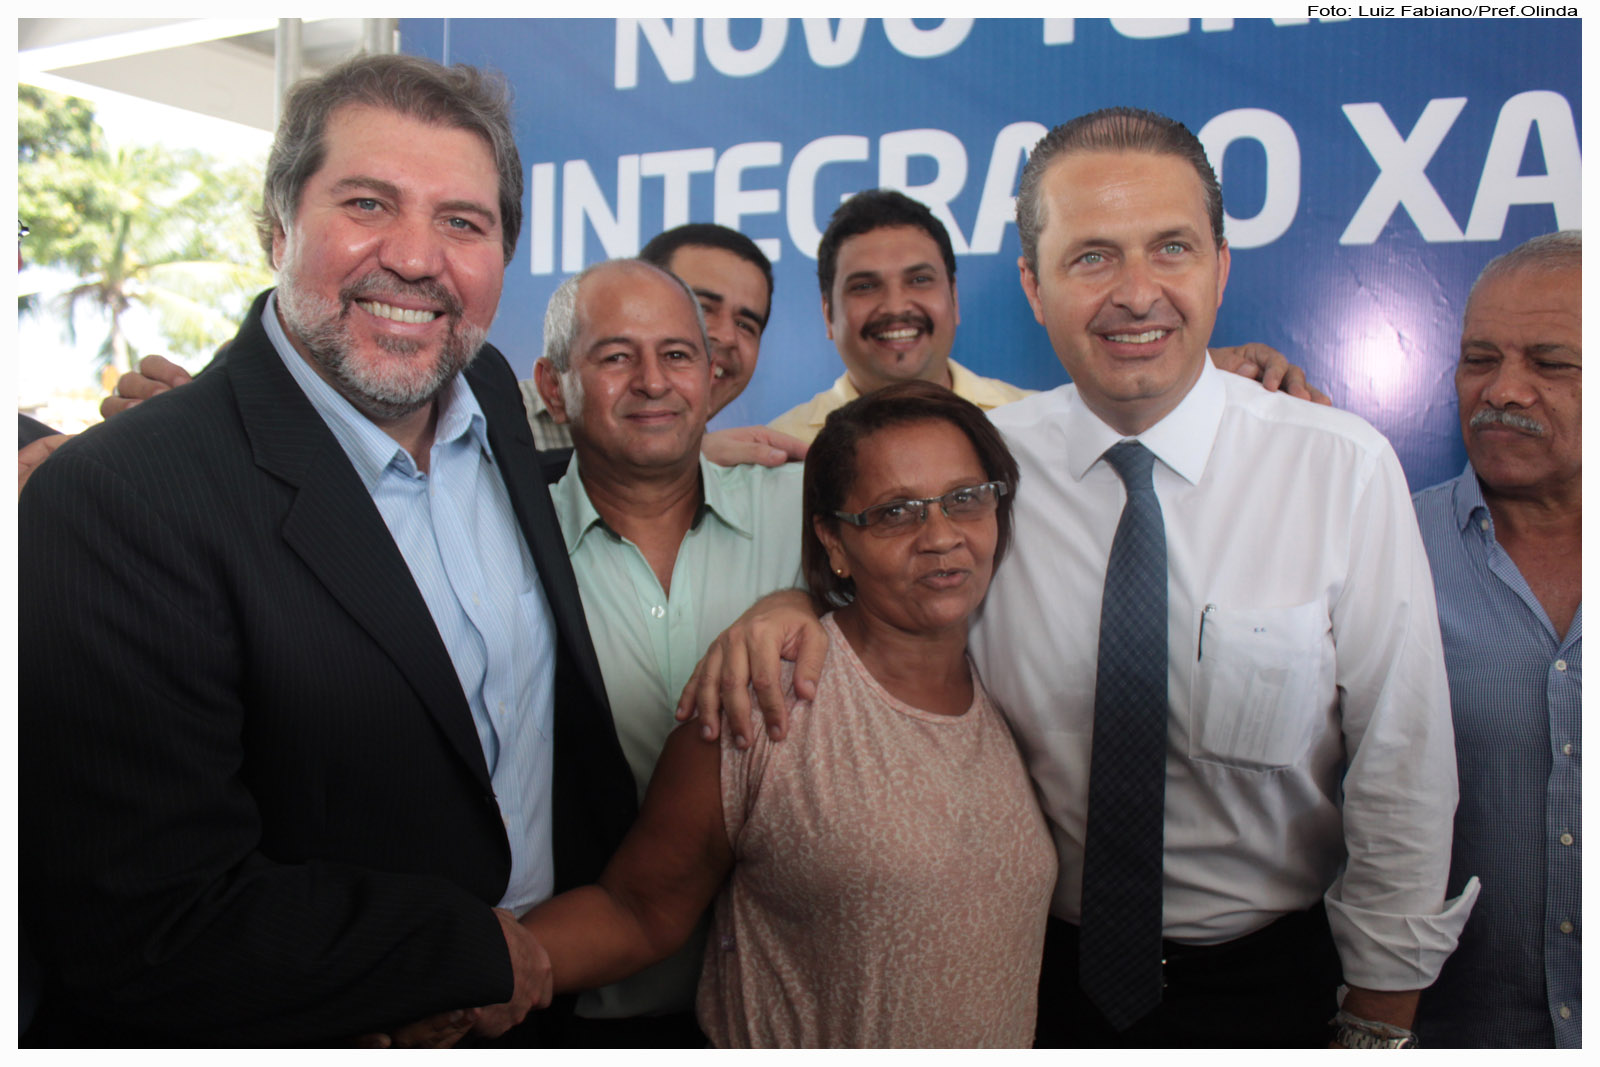 A cerimônia contou com a presença do governador do Estado, Eduardo Campos, e do prefeito, Renildo Calheiros. Foto: Luiz Fabiano/Pref.Olinda